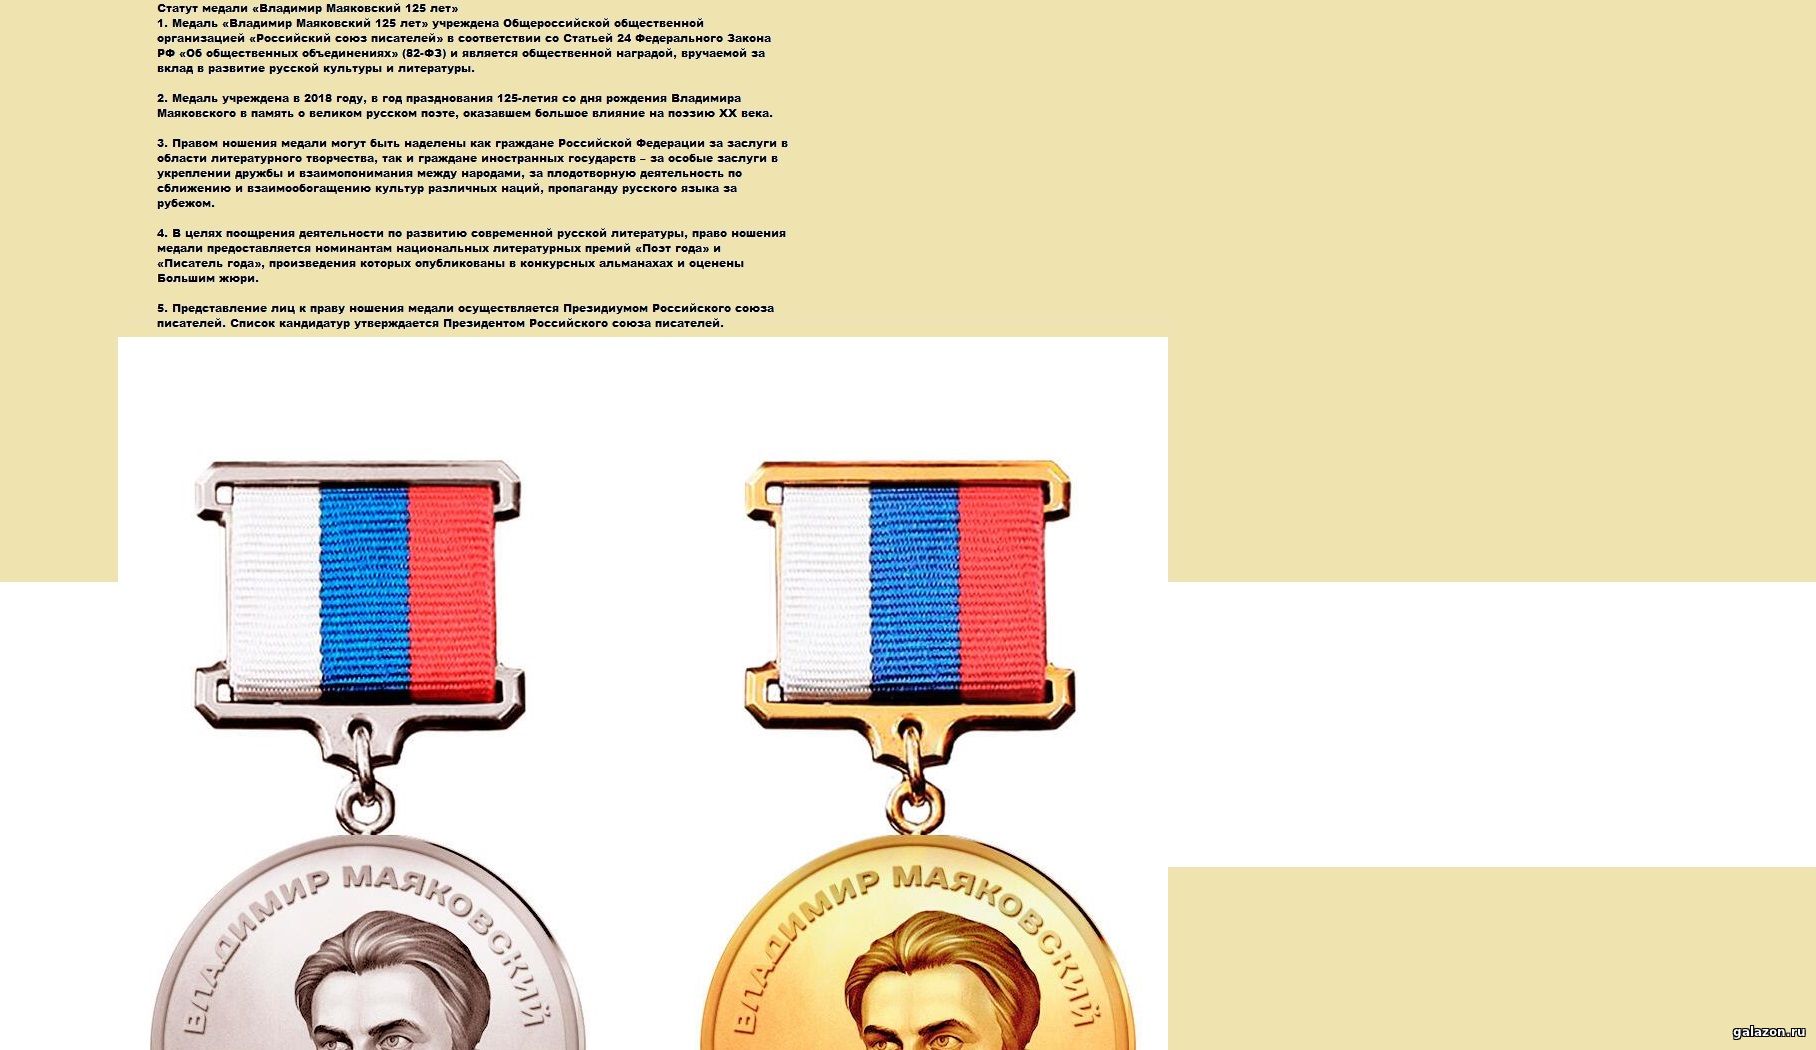 https://georglenta.ru/medal/